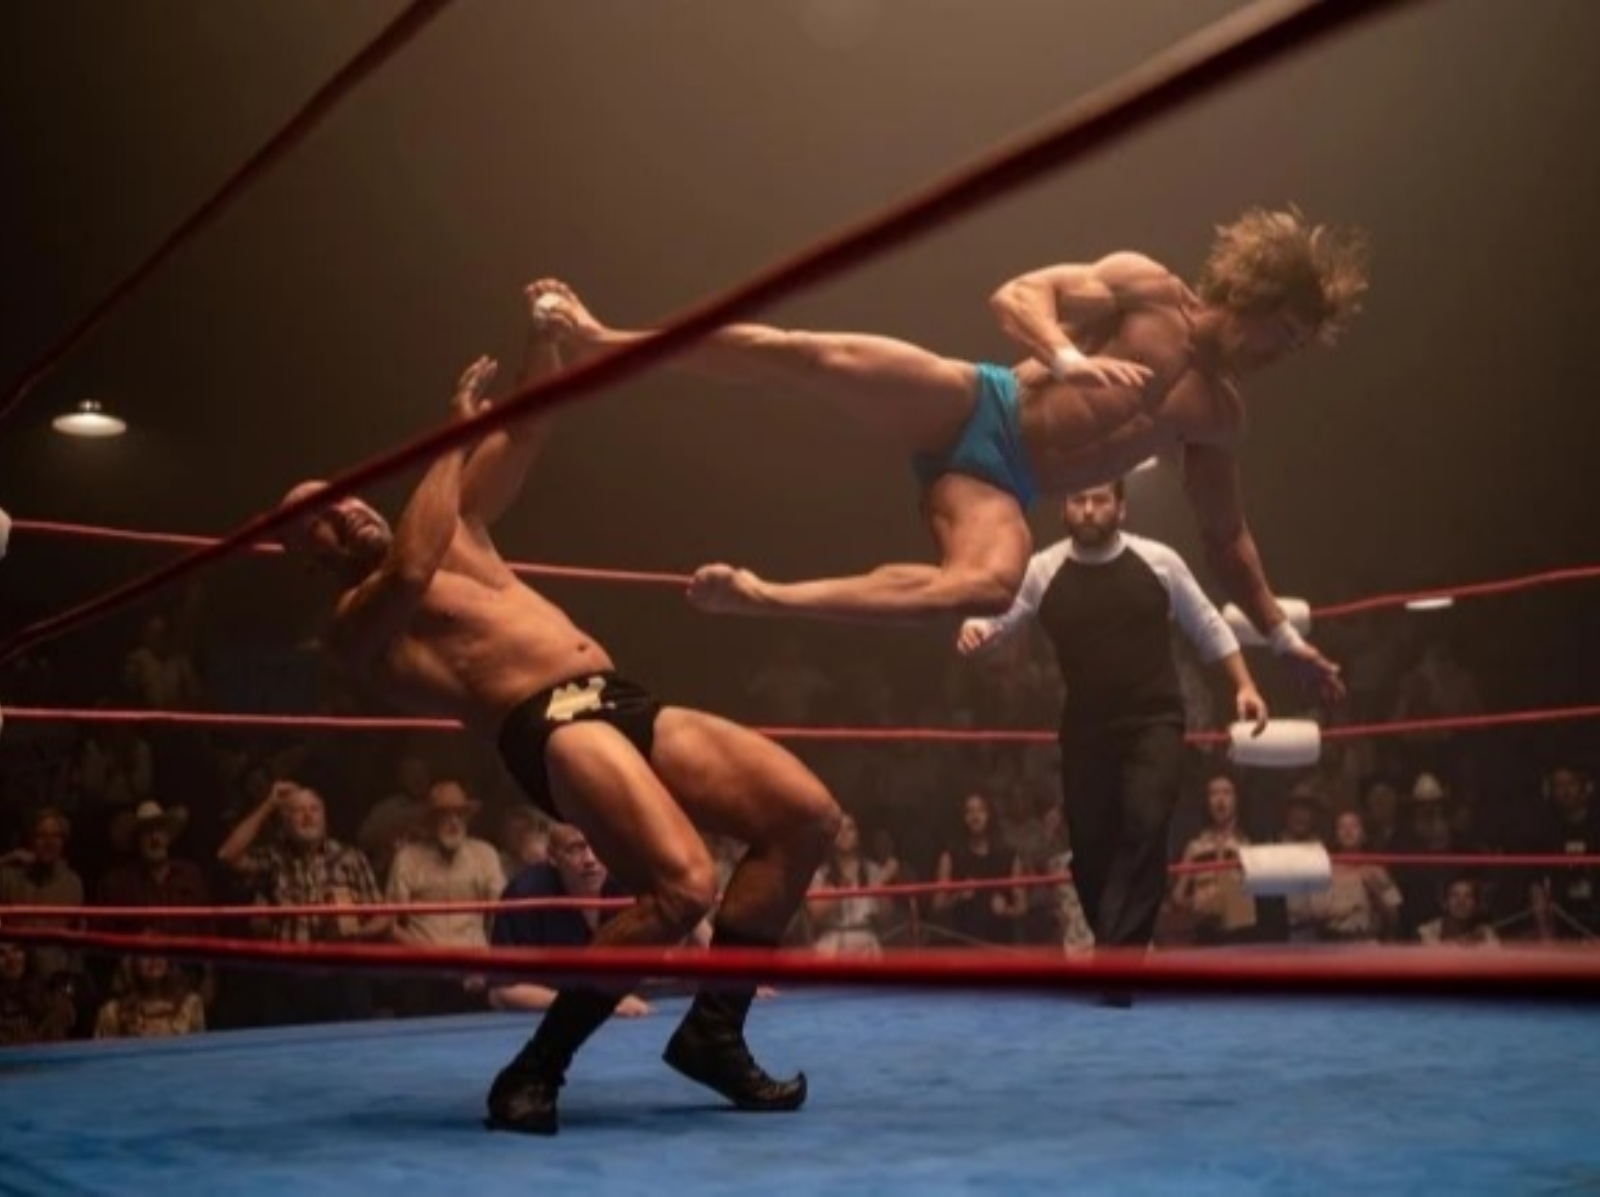 柴克艾弗隆 Zac Efron 化身摔角選手，穿小褲褲側踢照曝光引網濕一片！